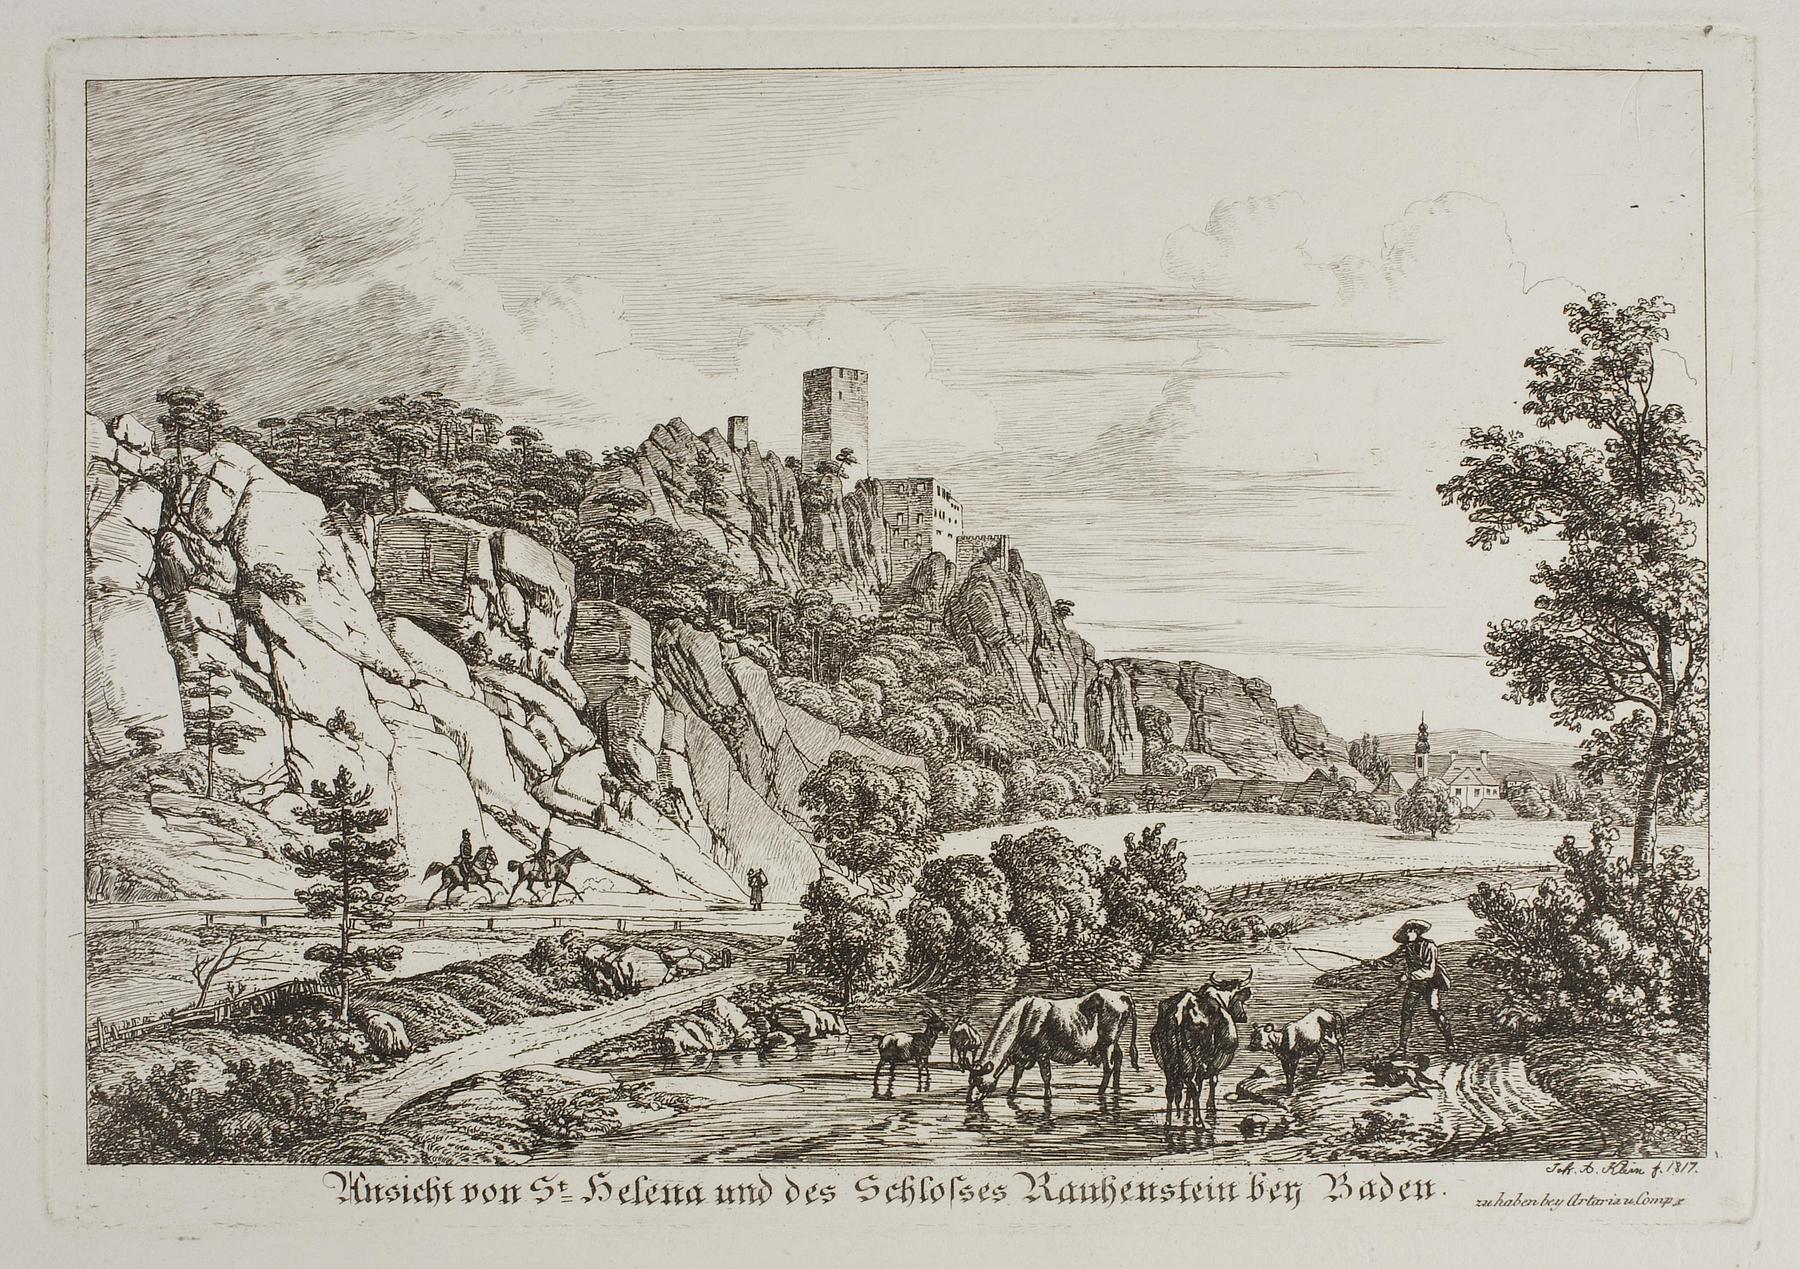 Udsigt over St. Helene og Rauhenstein-slottet i nærheden af Baden, E706